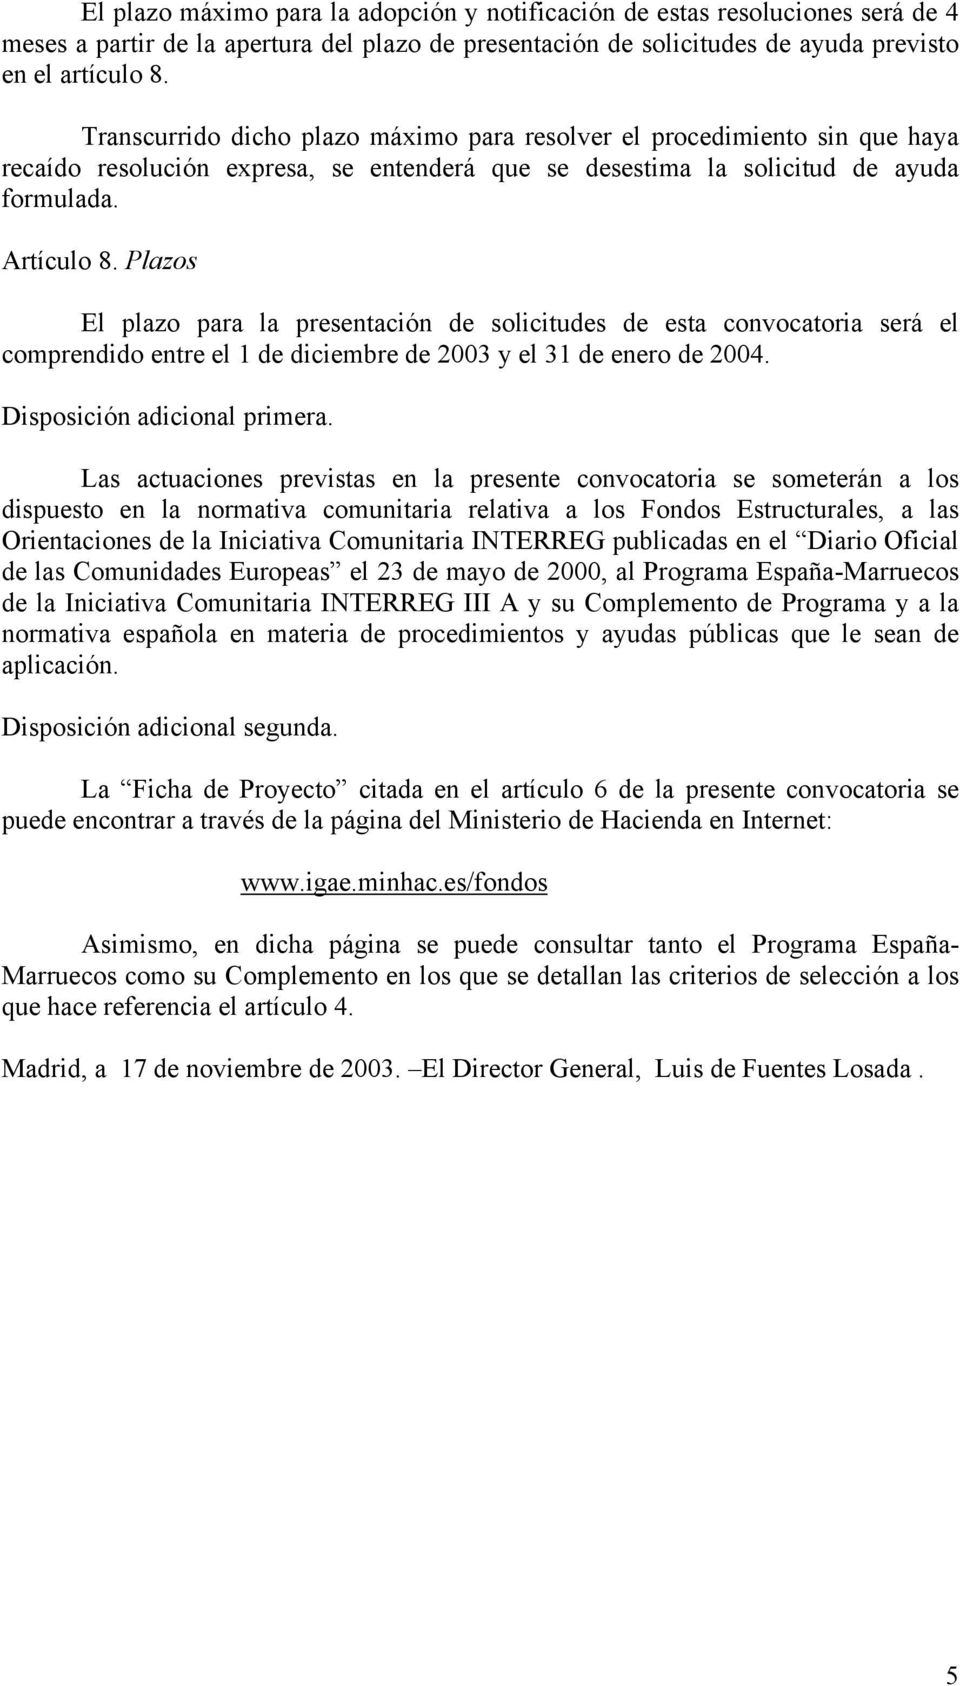 Plazos El plazo para la presentación de solicitudes de esta convocatoria será el comprendido entre el 1 de diciembre de 2003 y el 31 de enero de 2004. Disposición adicional primera.